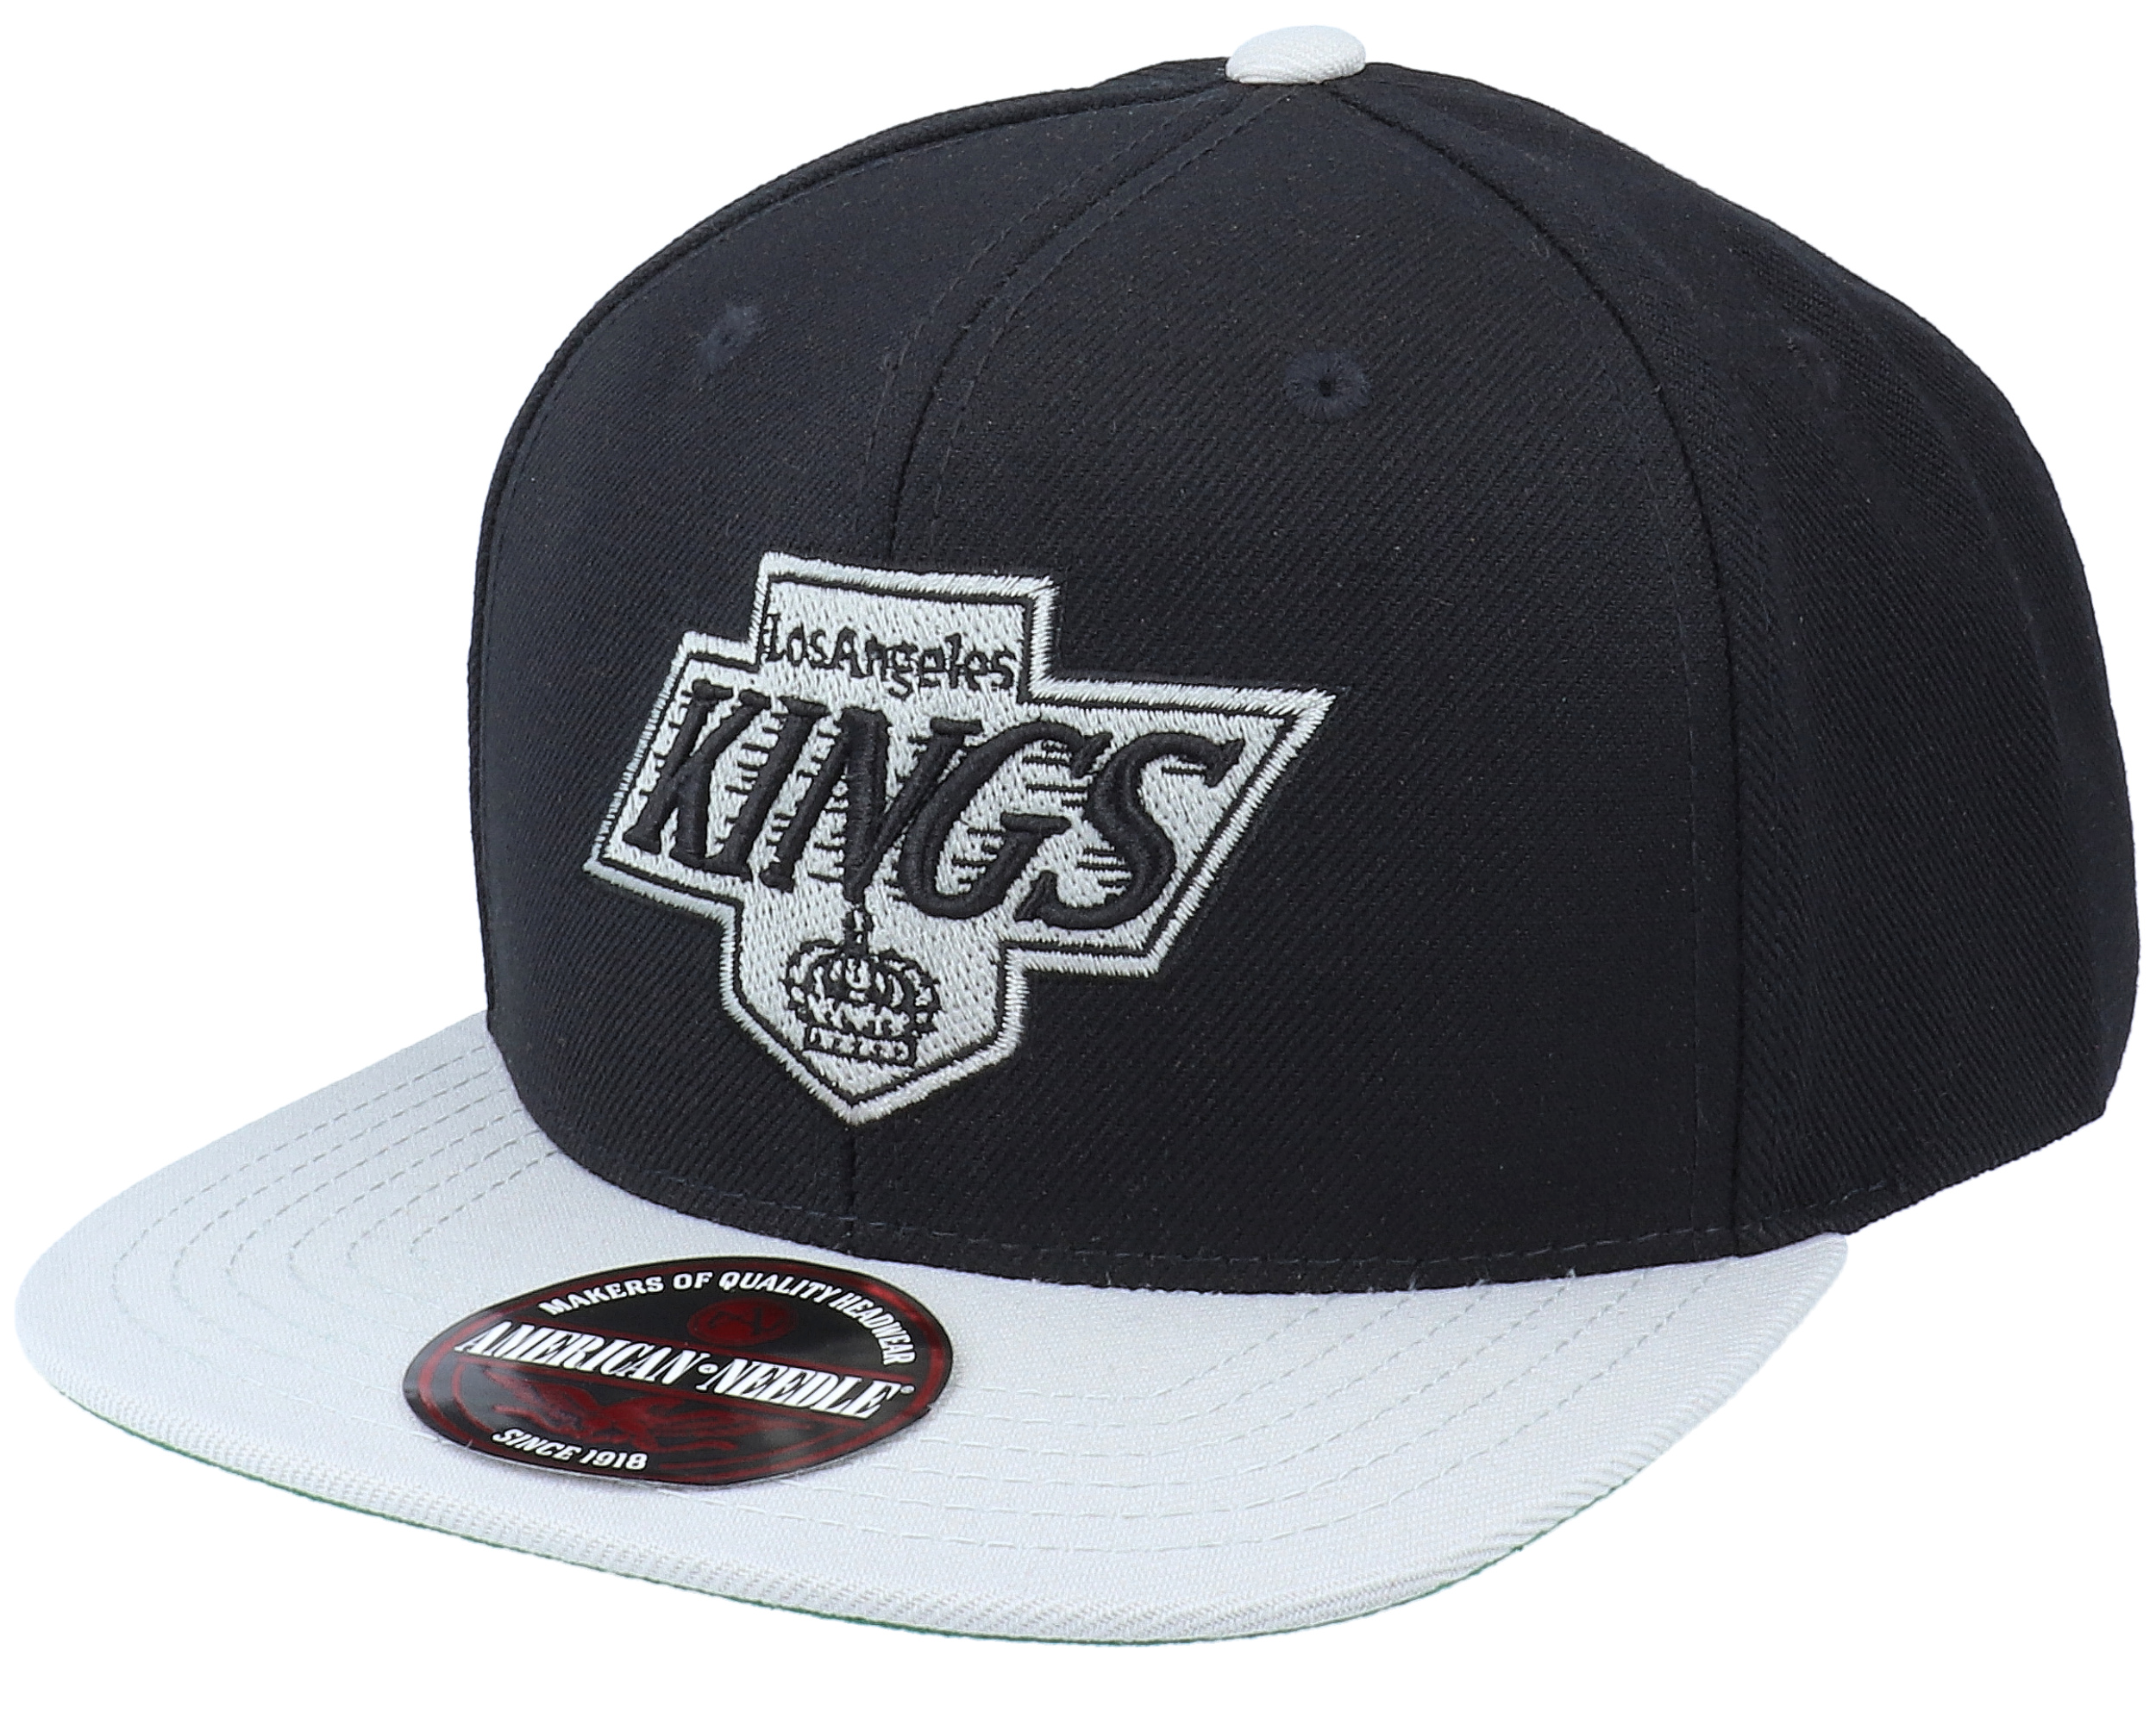 Los Angeles Kings 400 Series Black/Light Grey Snapback - American Needle